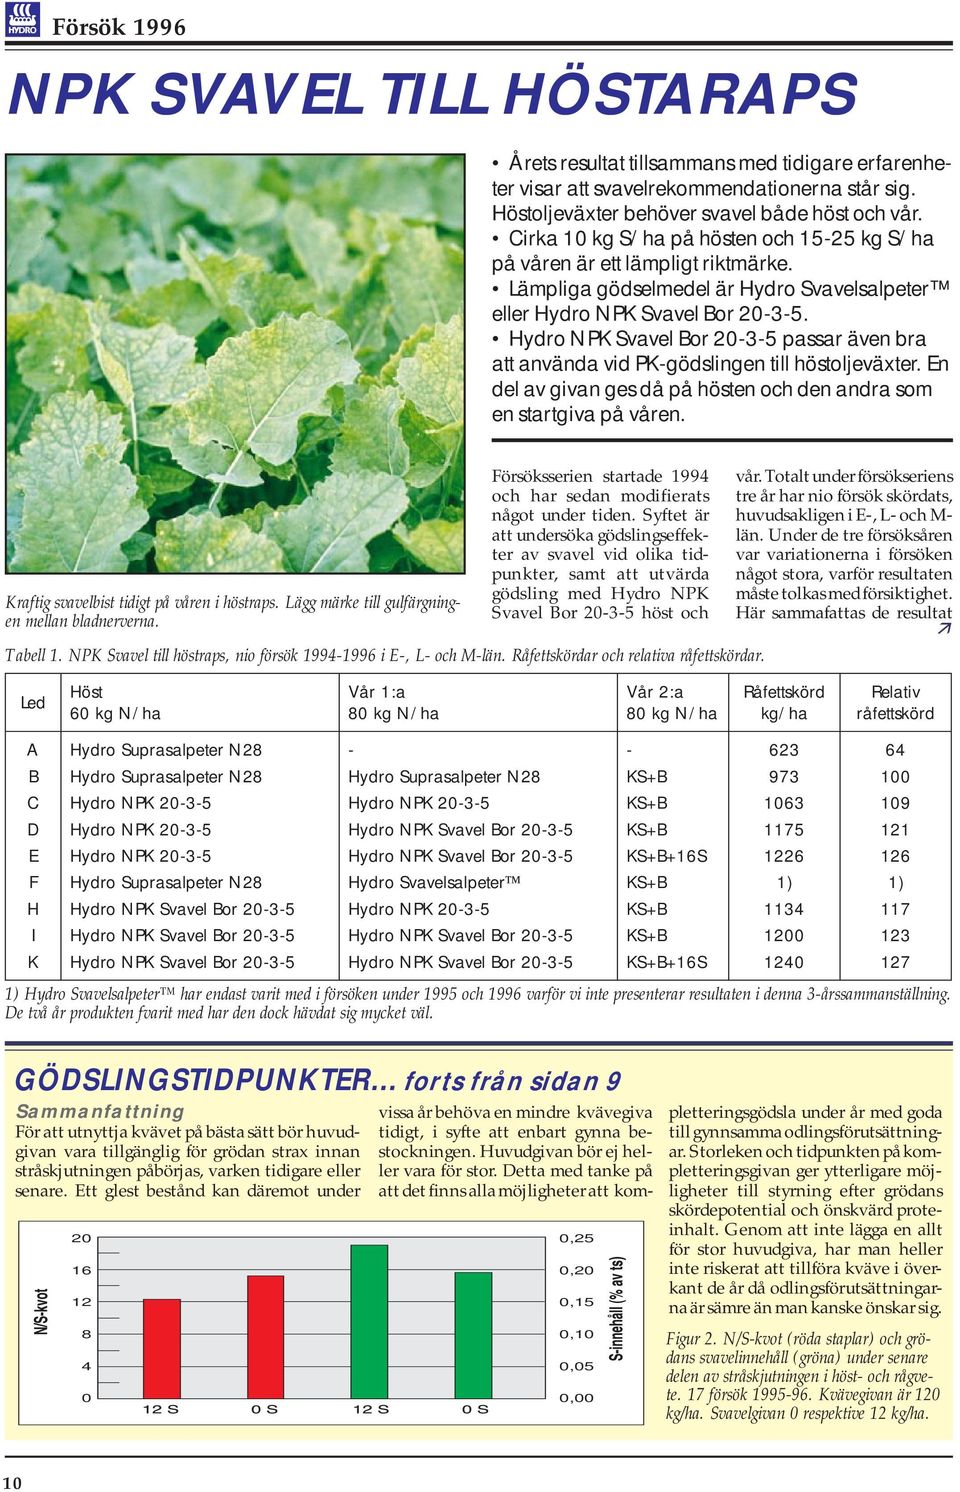 NPK Svavel Bor 2-3-5 passar även bra att använda vid PK-gödslingen till höstoljeväxter. En del av givan ges då på hösten och den andra som en startgiva på våren.